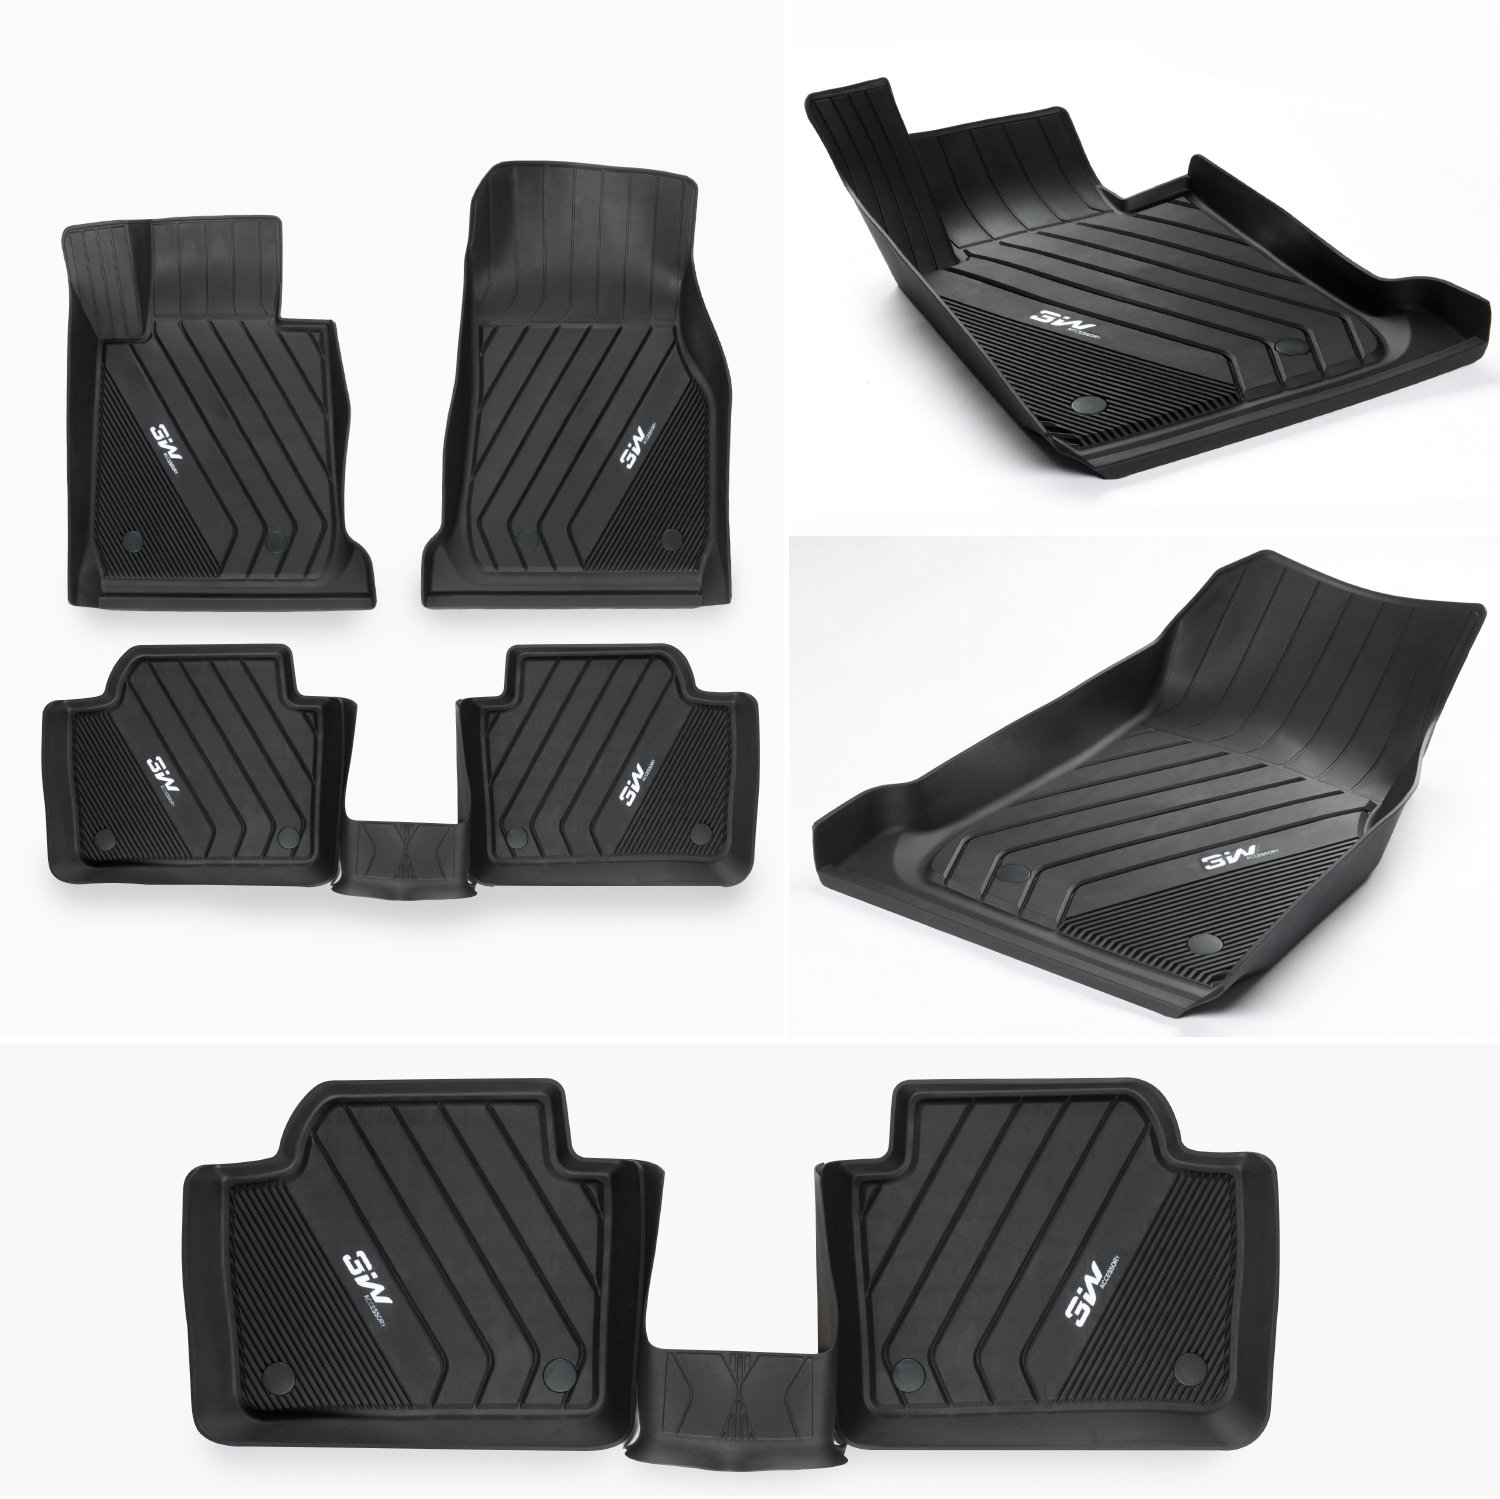 Thảm lót sàn xe ô tô BMW X4 2020- nhãn hiệu Macsim 3W - chất liệu nhựa TPE đúc khuôn cao cấp - màu